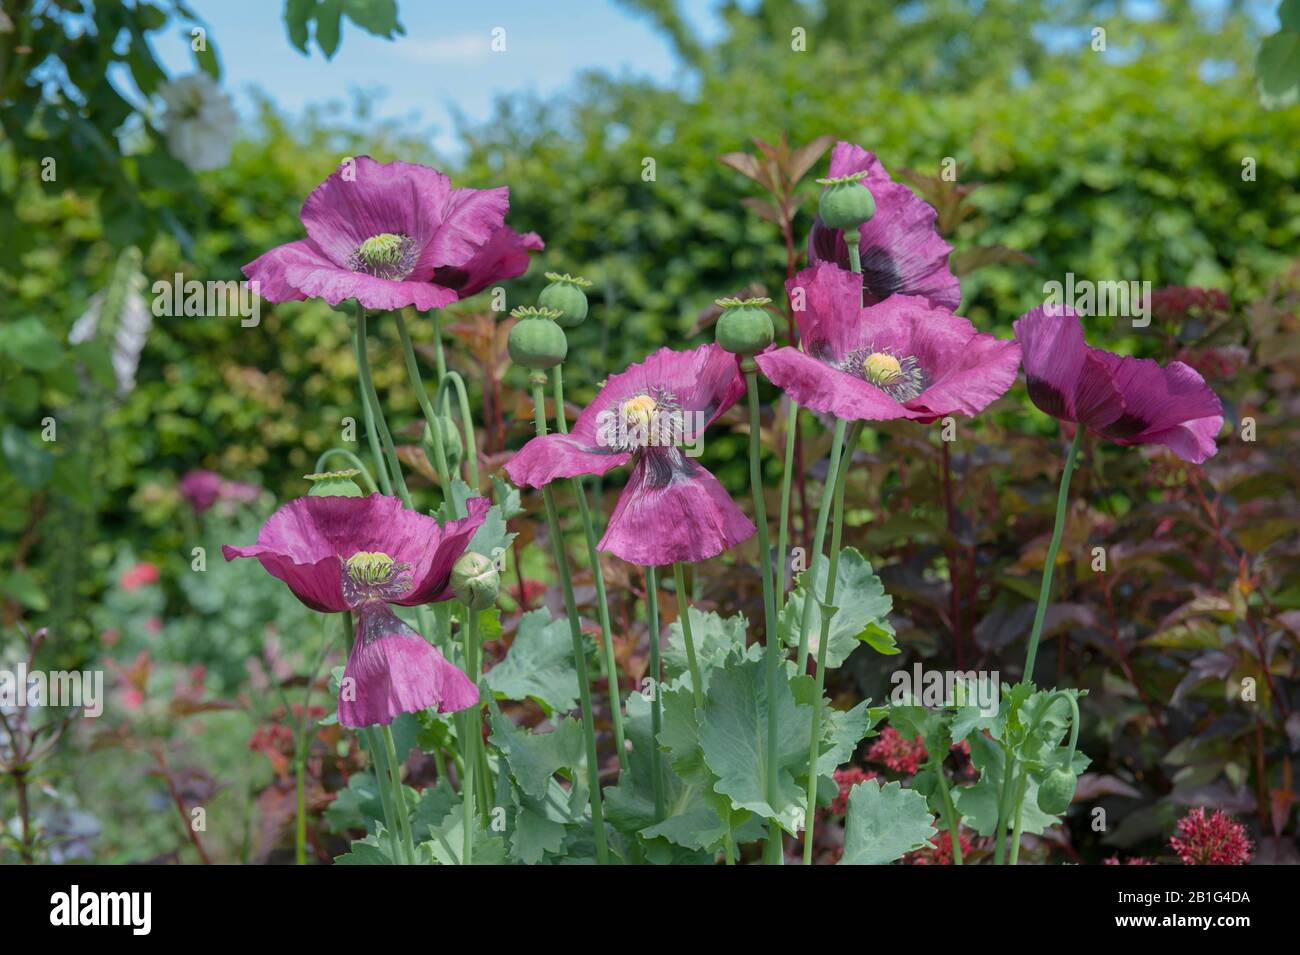 Coquelicots à L'Opium (papaaver somniferum 'Dark Plum') Dans un jardin rural de campagne dans le Devon rural, Angleterre, Royaume-Uni Banque D'Images